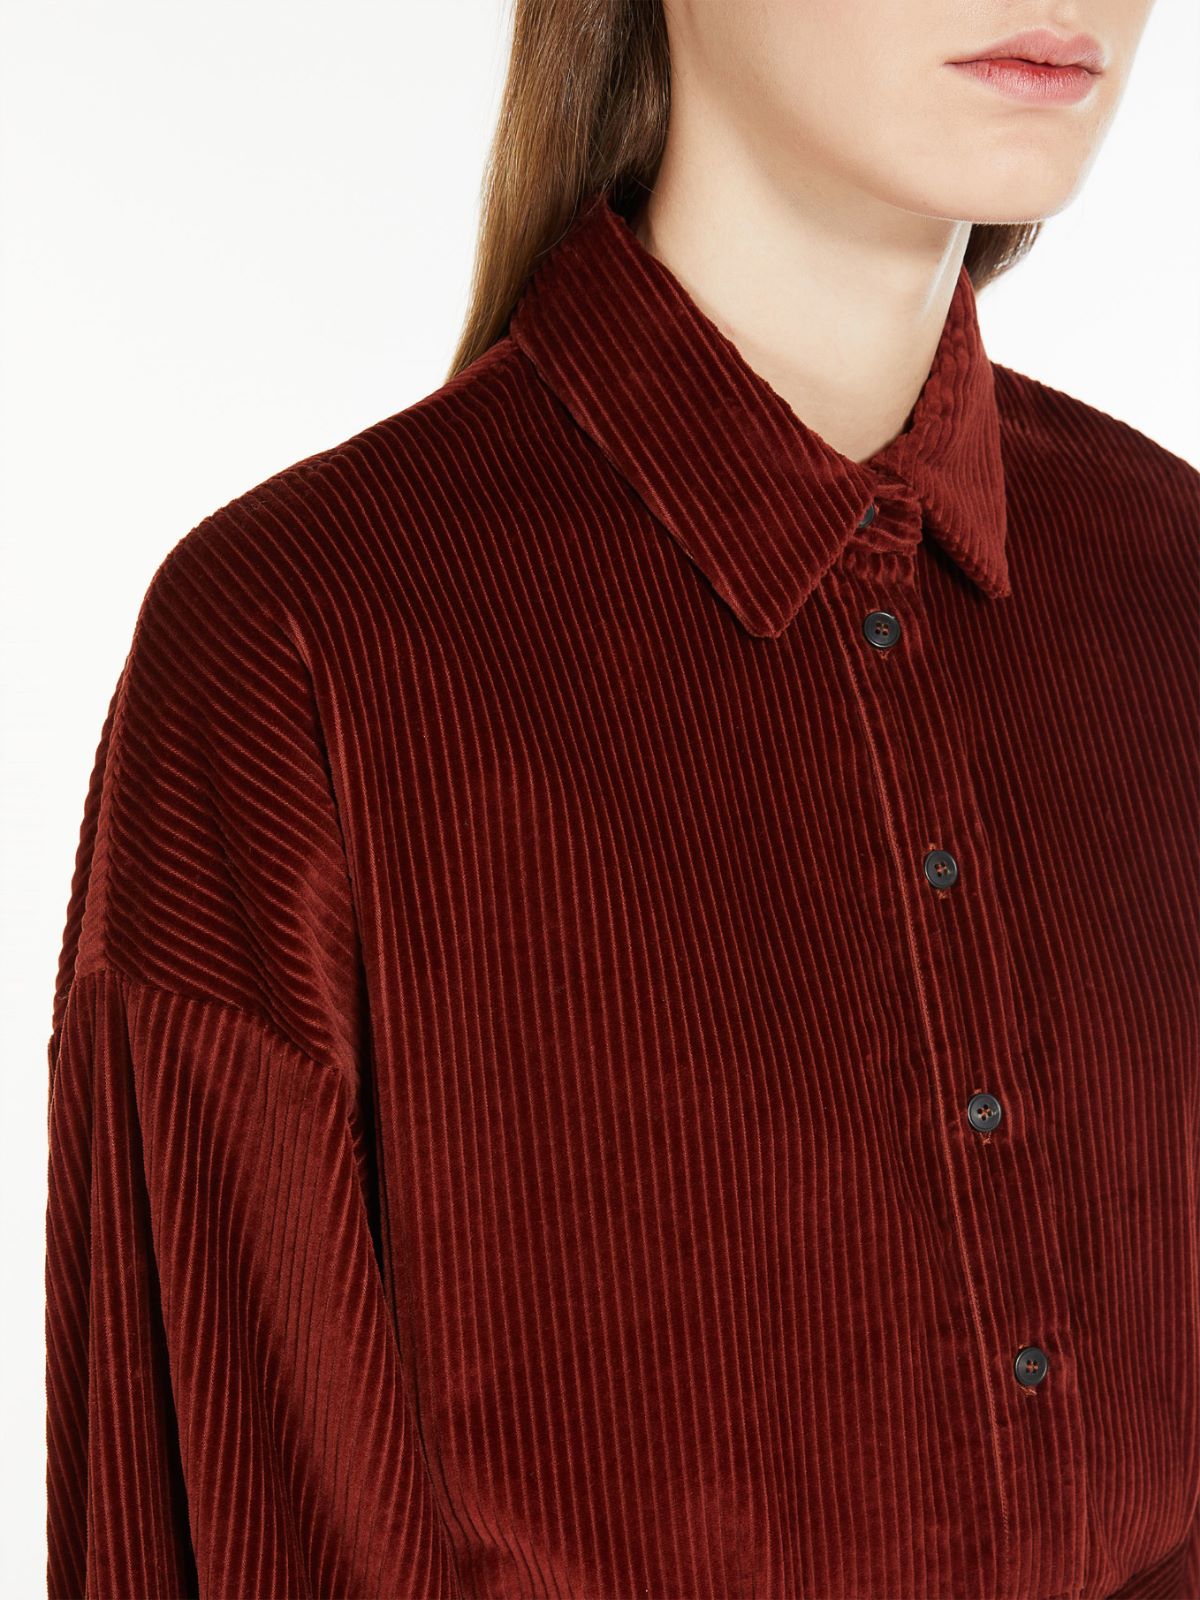 Cotton velvet shirt dress - RUST - Weekend Max Mara - 4